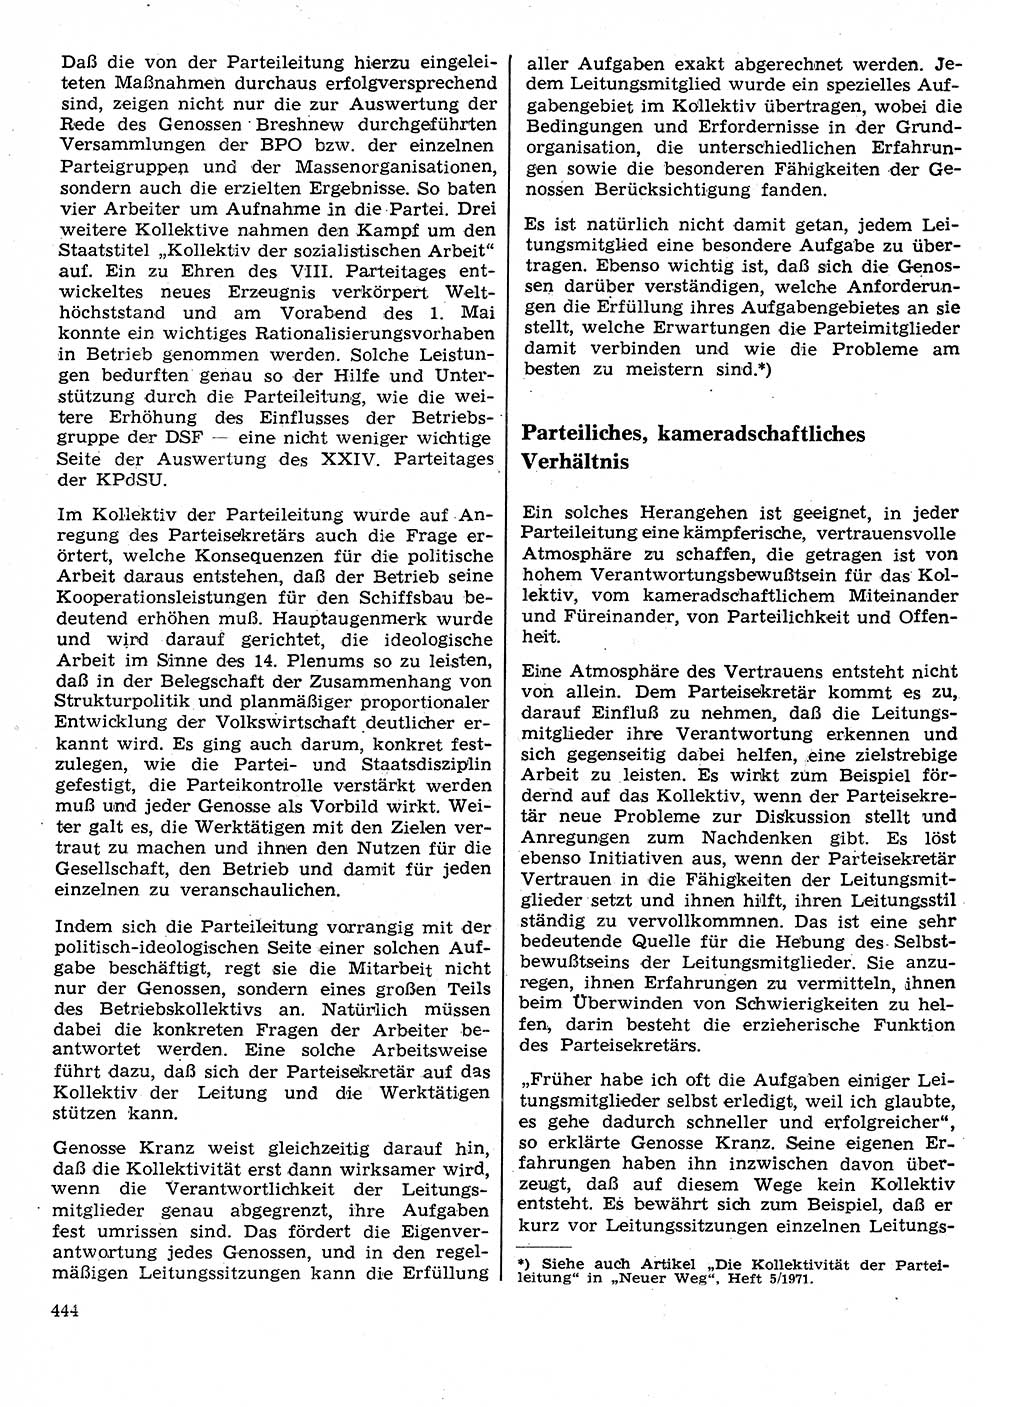 Neuer Weg (NW), Organ des Zentralkomitees (ZK) der SED (Sozialistische Einheitspartei Deutschlands) für Fragen des Parteilebens, 26. Jahrgang [Deutsche Demokratische Republik (DDR)] 1971, Seite 444 (NW ZK SED DDR 1971, S. 444)